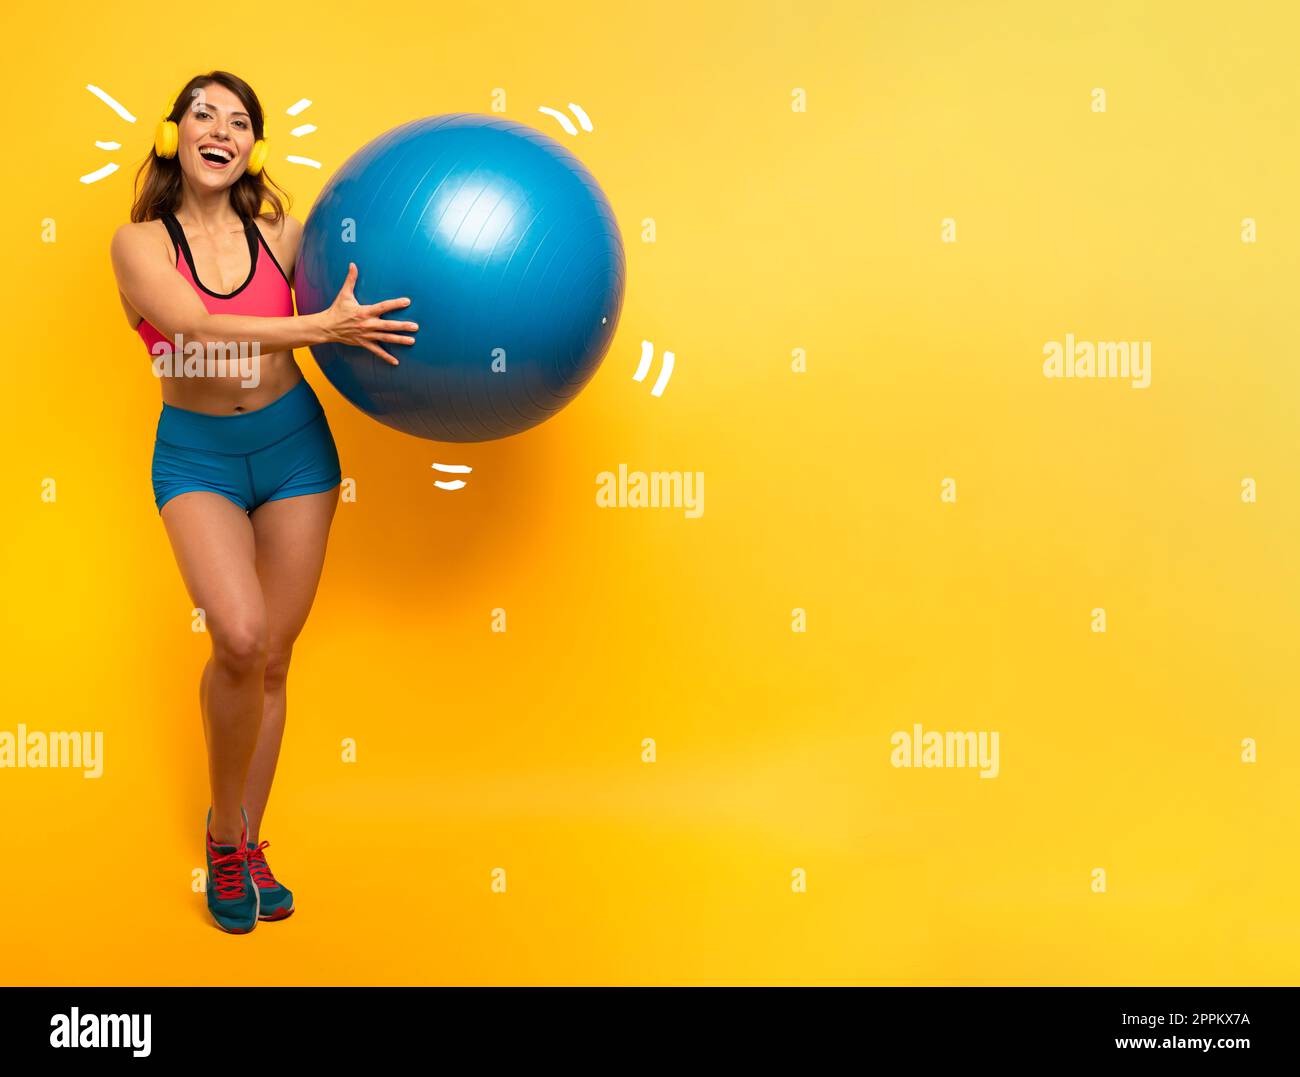 Mädchen mit Headset hält einen Sportball. Gelber Hintergrund Stockfoto